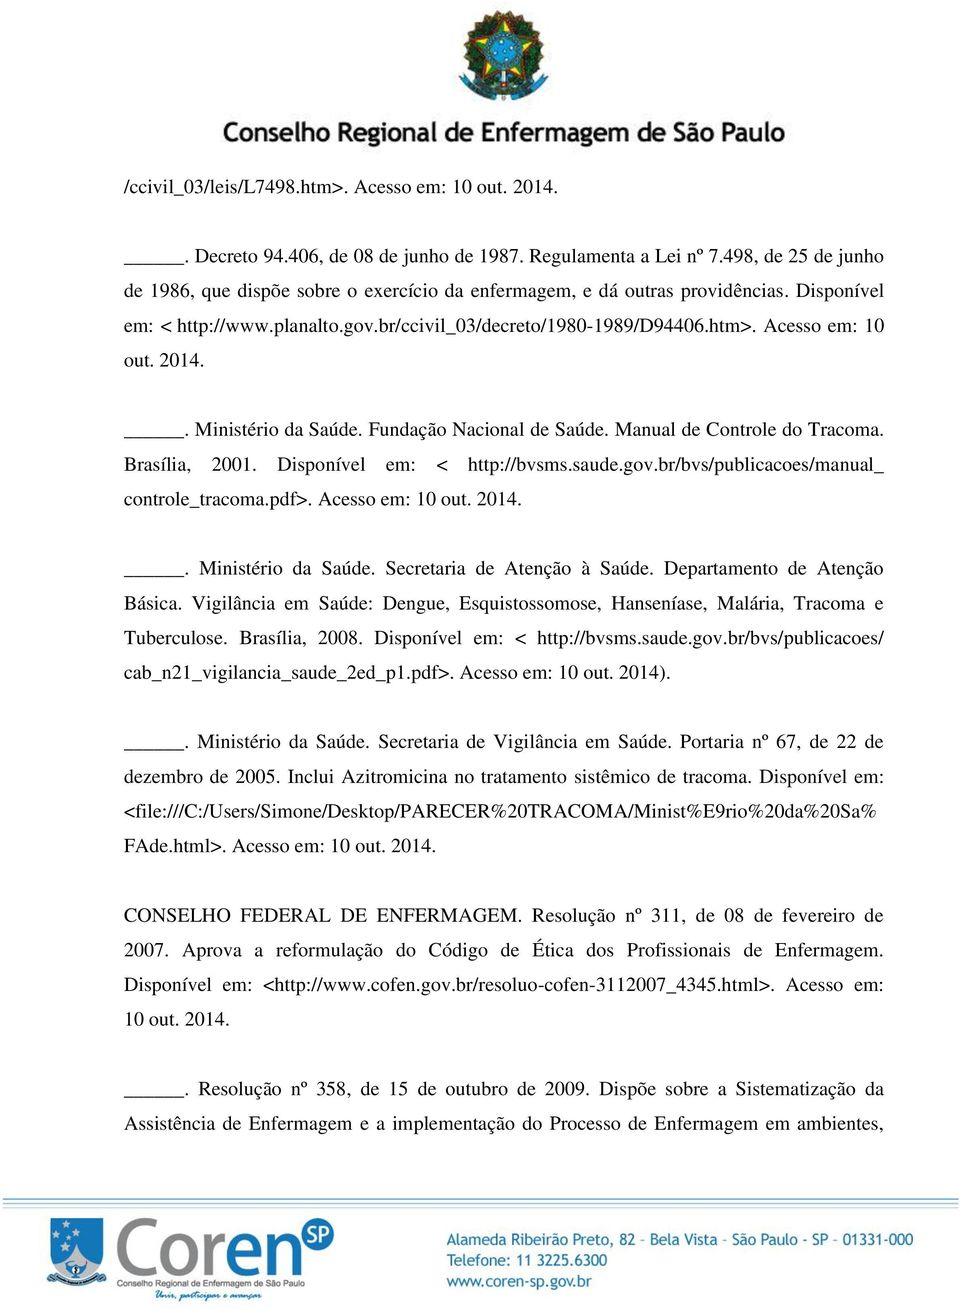 Acesso em: 10 out. 2014.. Ministério da Saúde. Fundação Nacional de Saúde. Manual de Controle do Tracoma. Brasília, 2001. Disponível em: < http://bvsms.saude.gov.